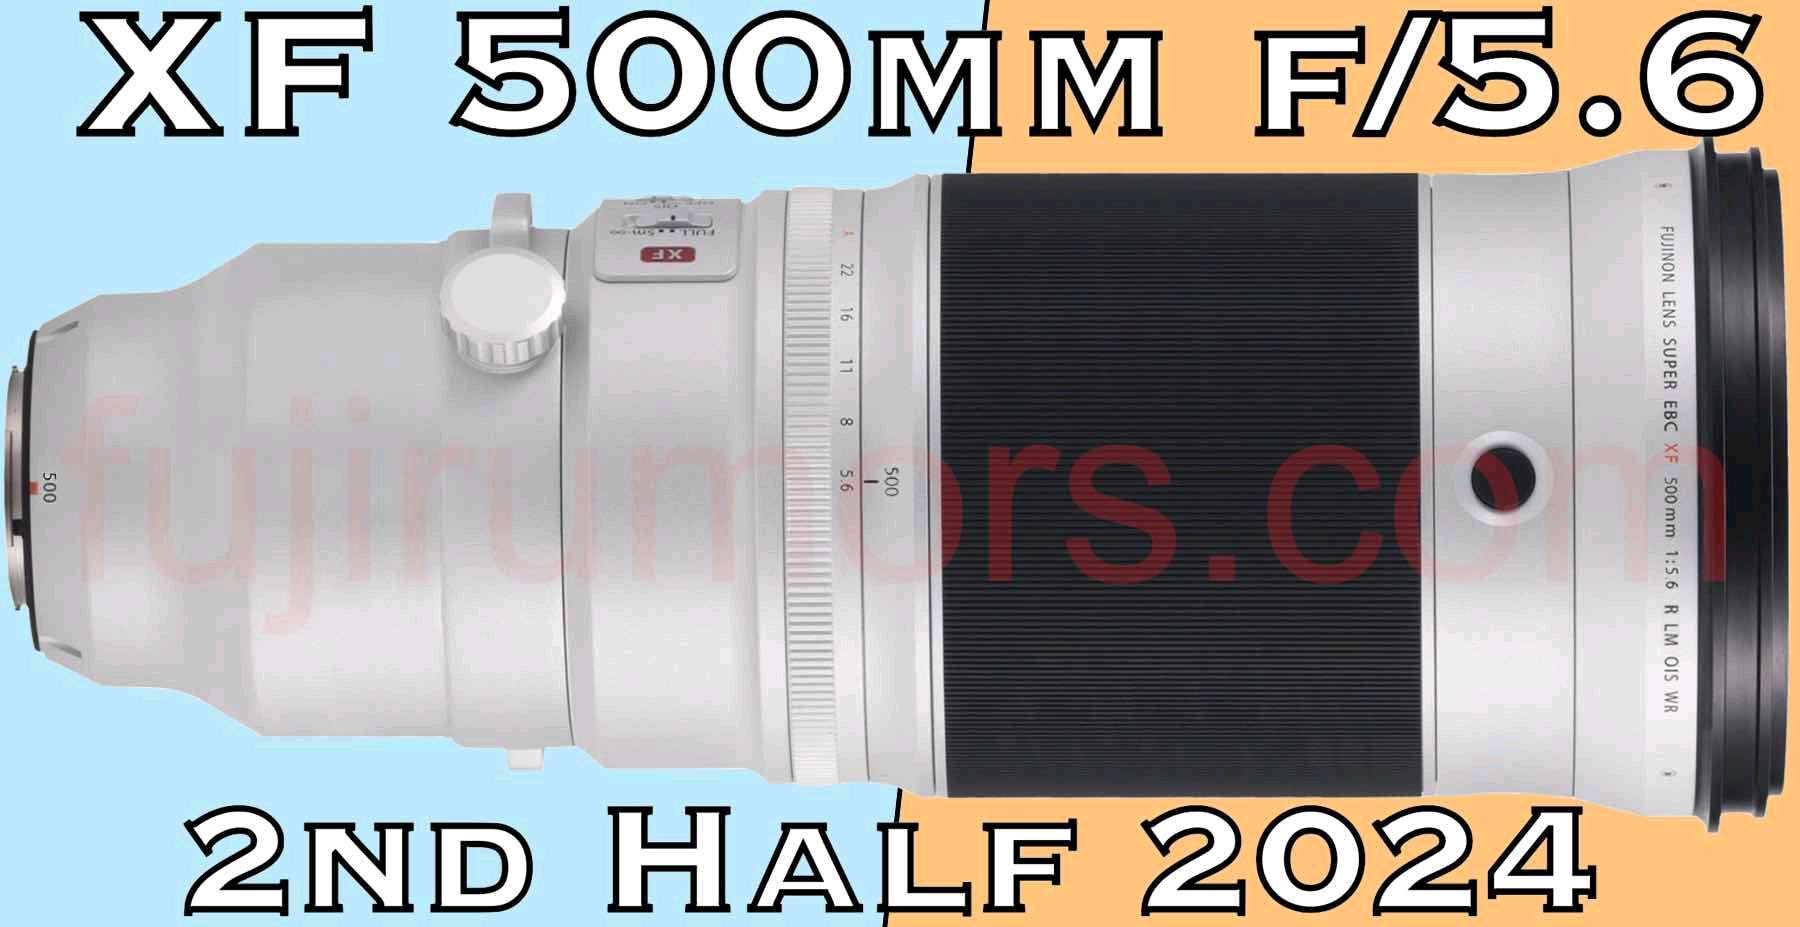 消息称富士 XF 500mm F5.6 镜头新品今年下半年发布